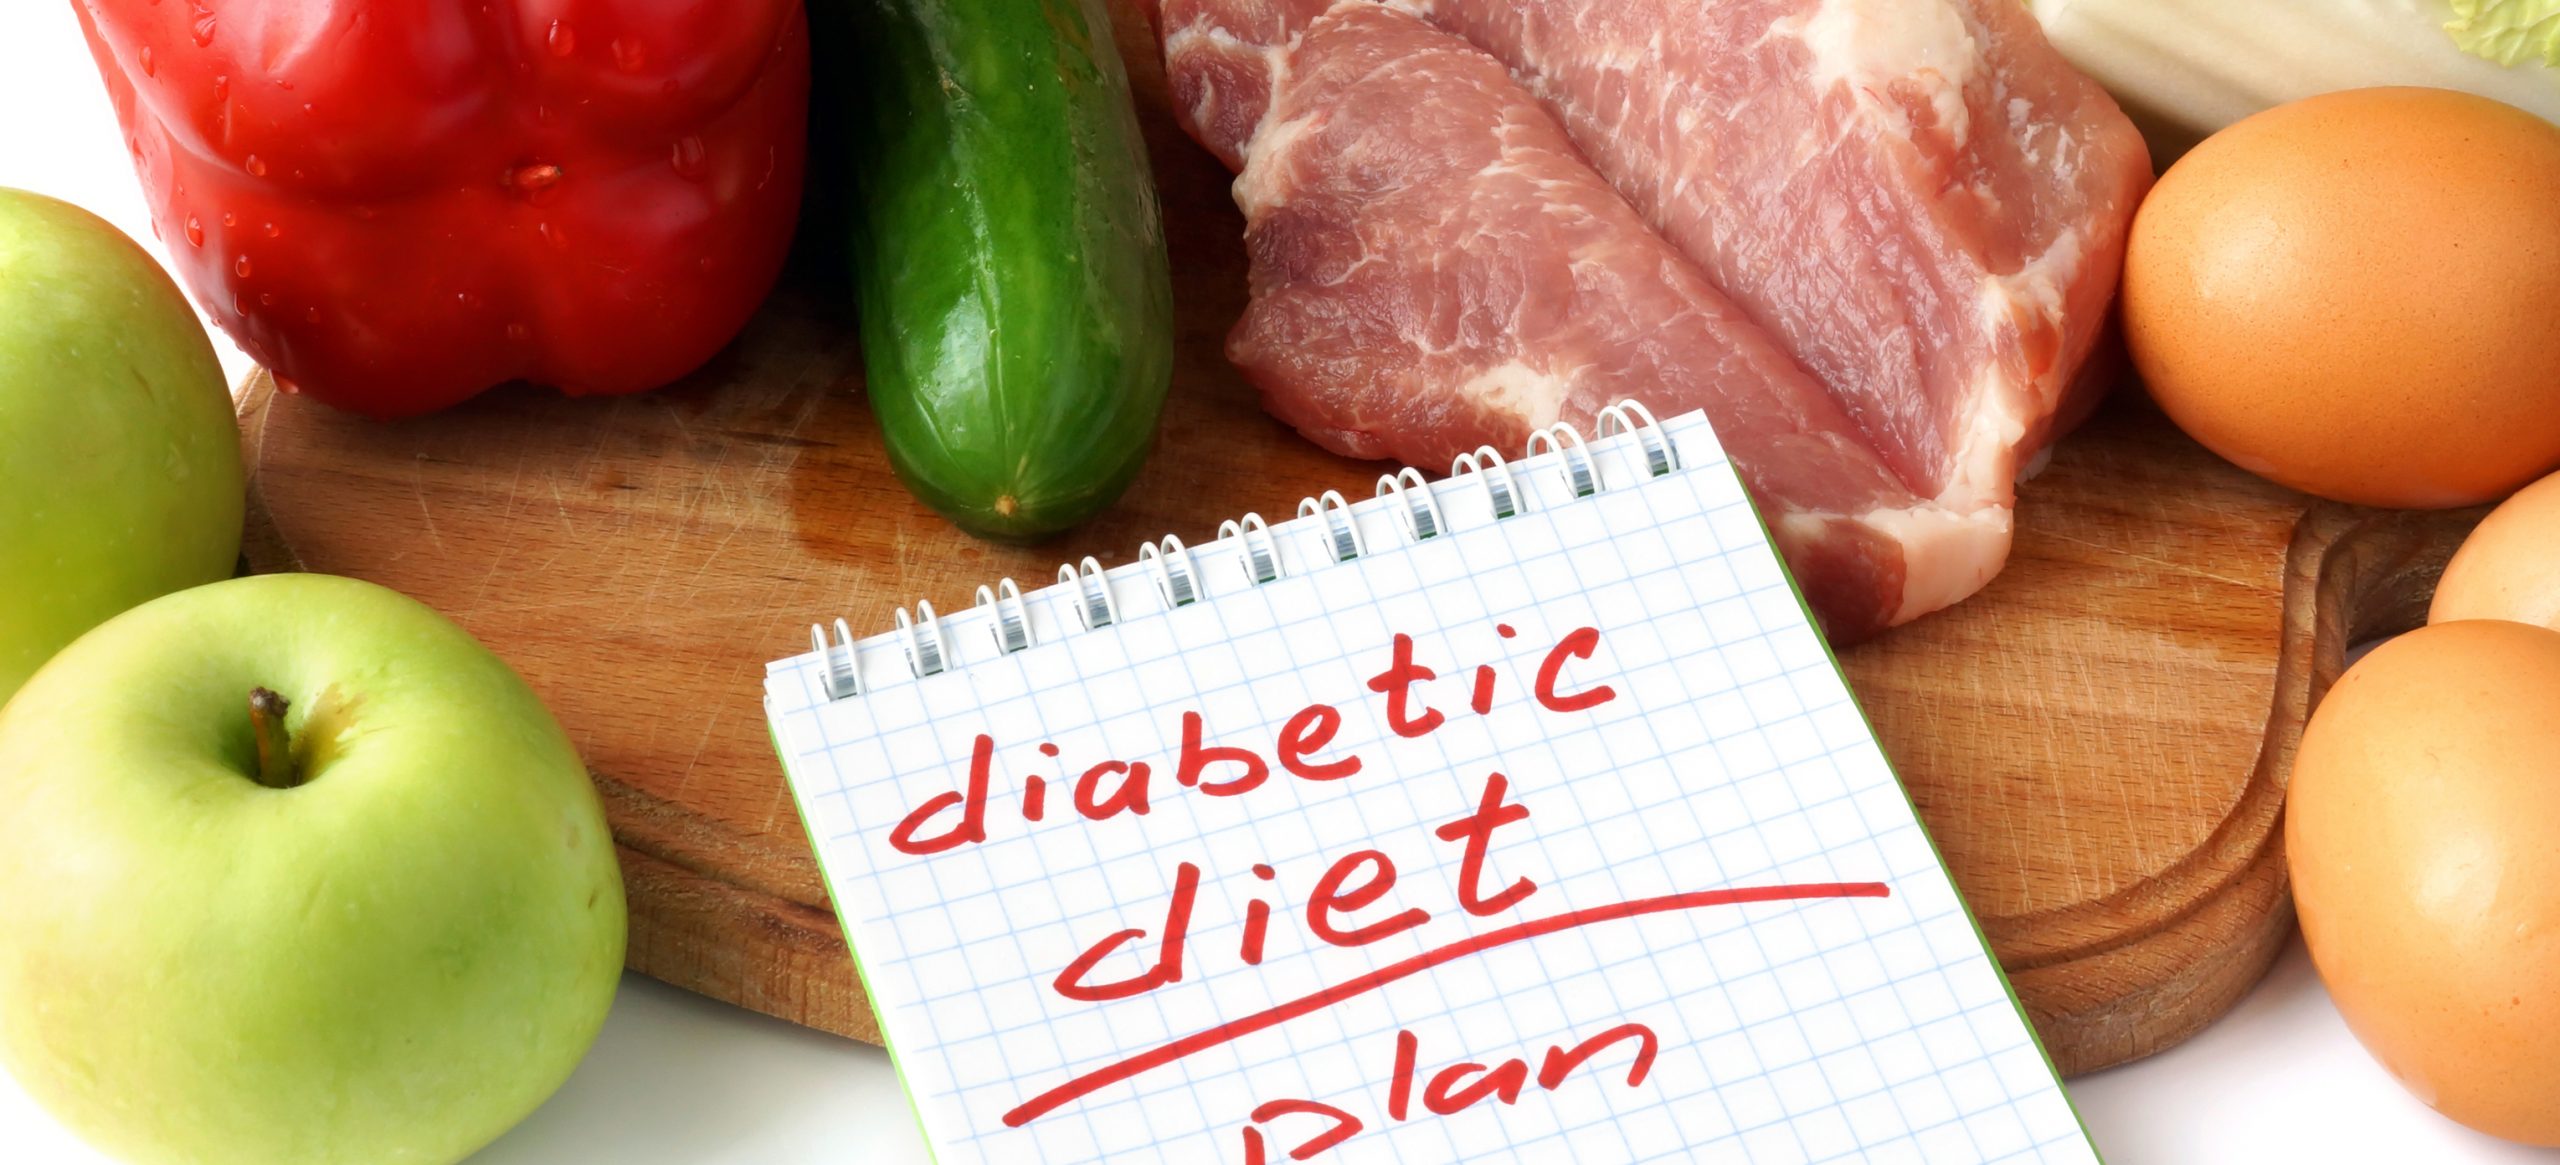 При диабете можно есть мясо. Диетотерапия при сахарном диабете. Продукты для диабетиков. Здоровое питание для диабетиков. Полезные продукты.